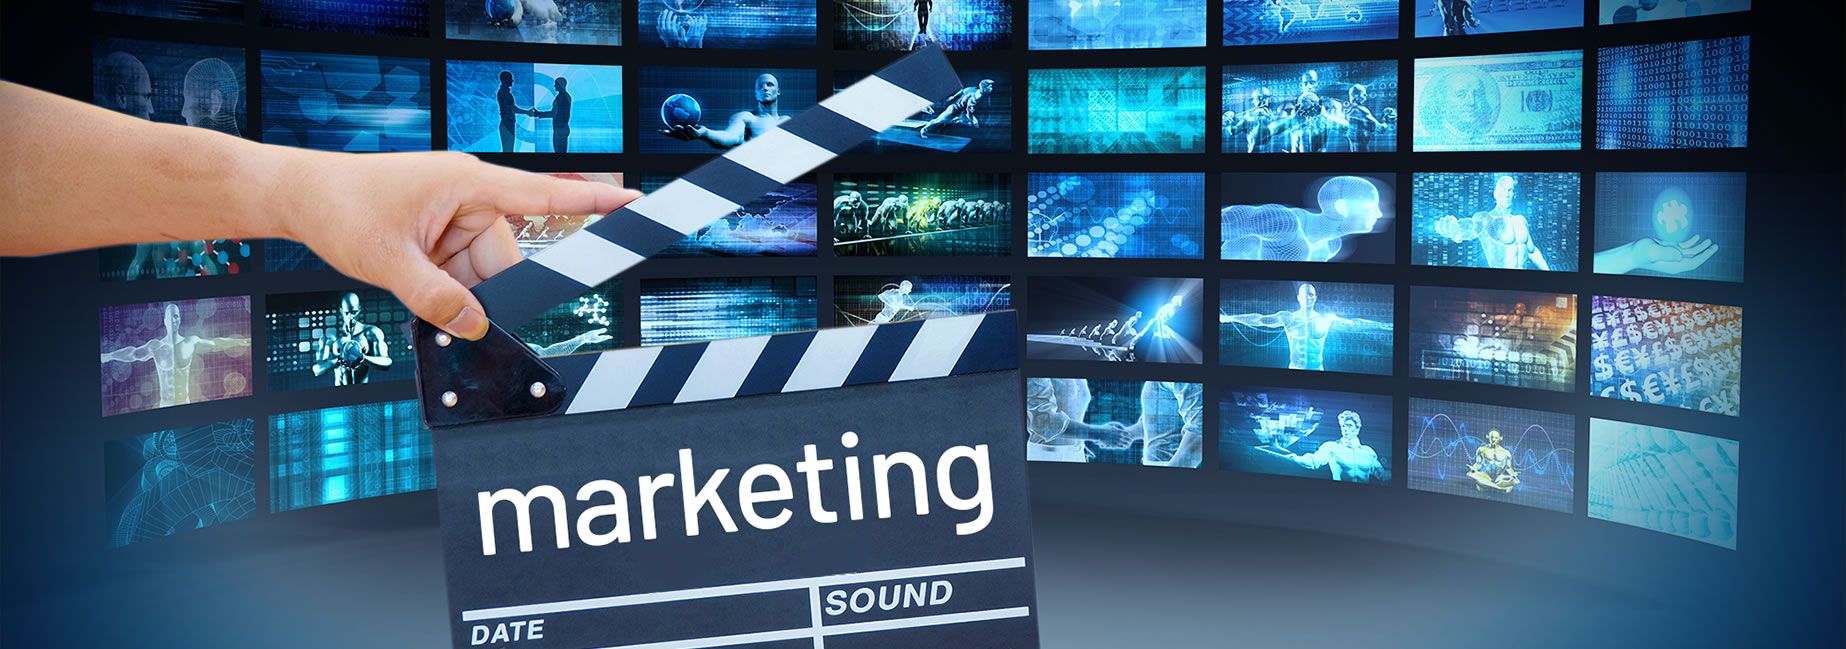 Les 20 meilleures idées pour développer marketing vidéo